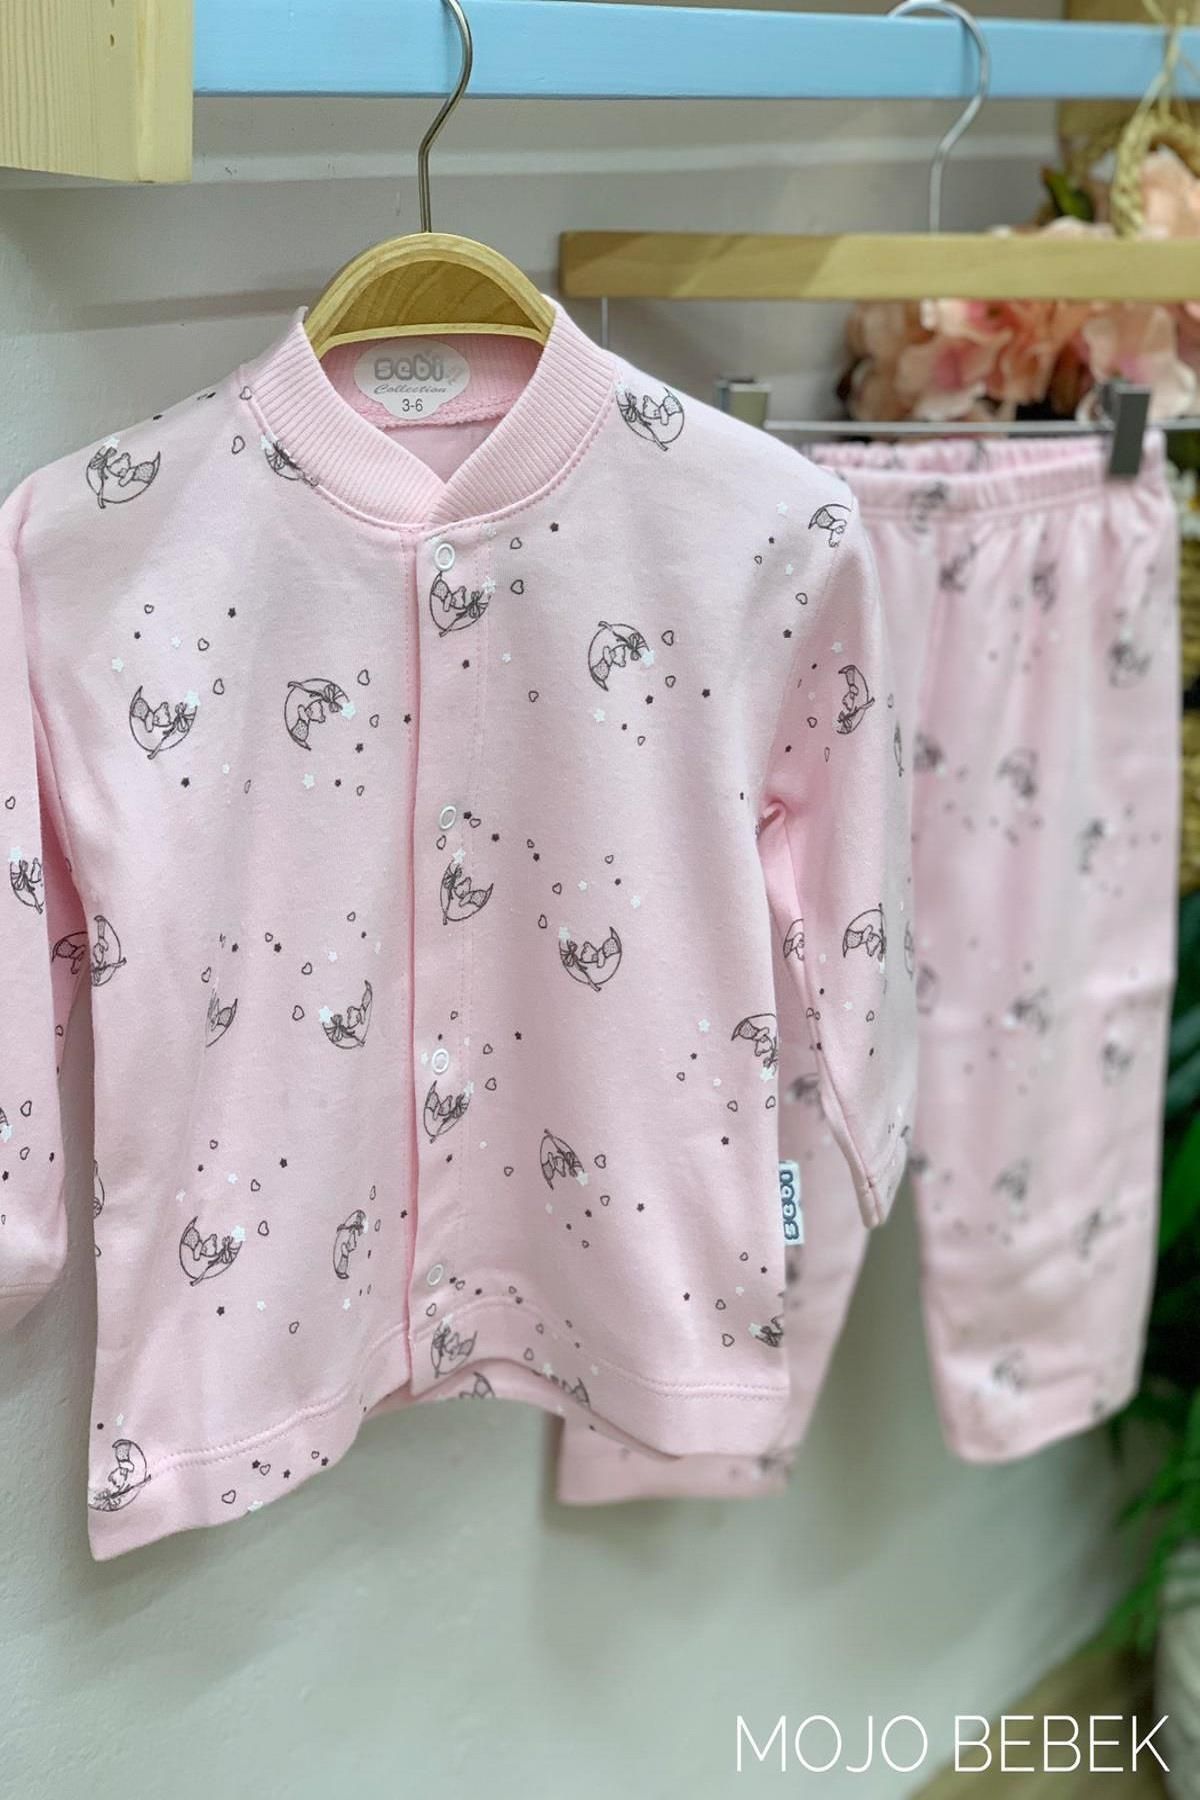 Sebi Bebe Bebek Ay Desenli Pijama Takımı 4012 Pembe